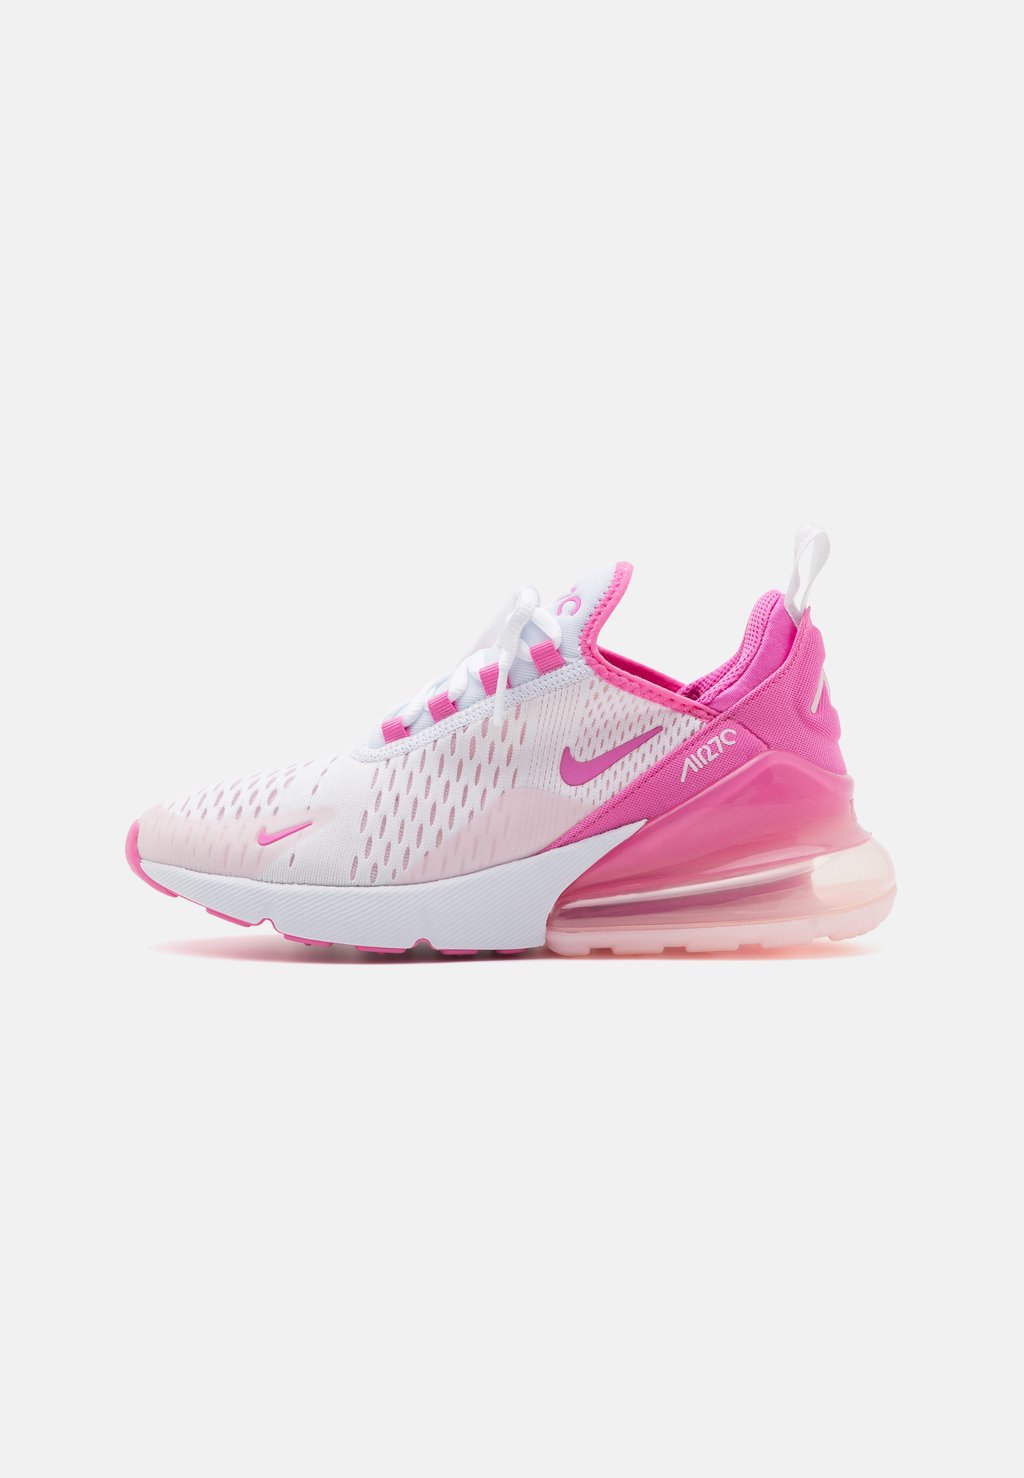 Низкие кроссовки Air Max 270 Nike, цвет white/playful pink/pink foam цена и фото